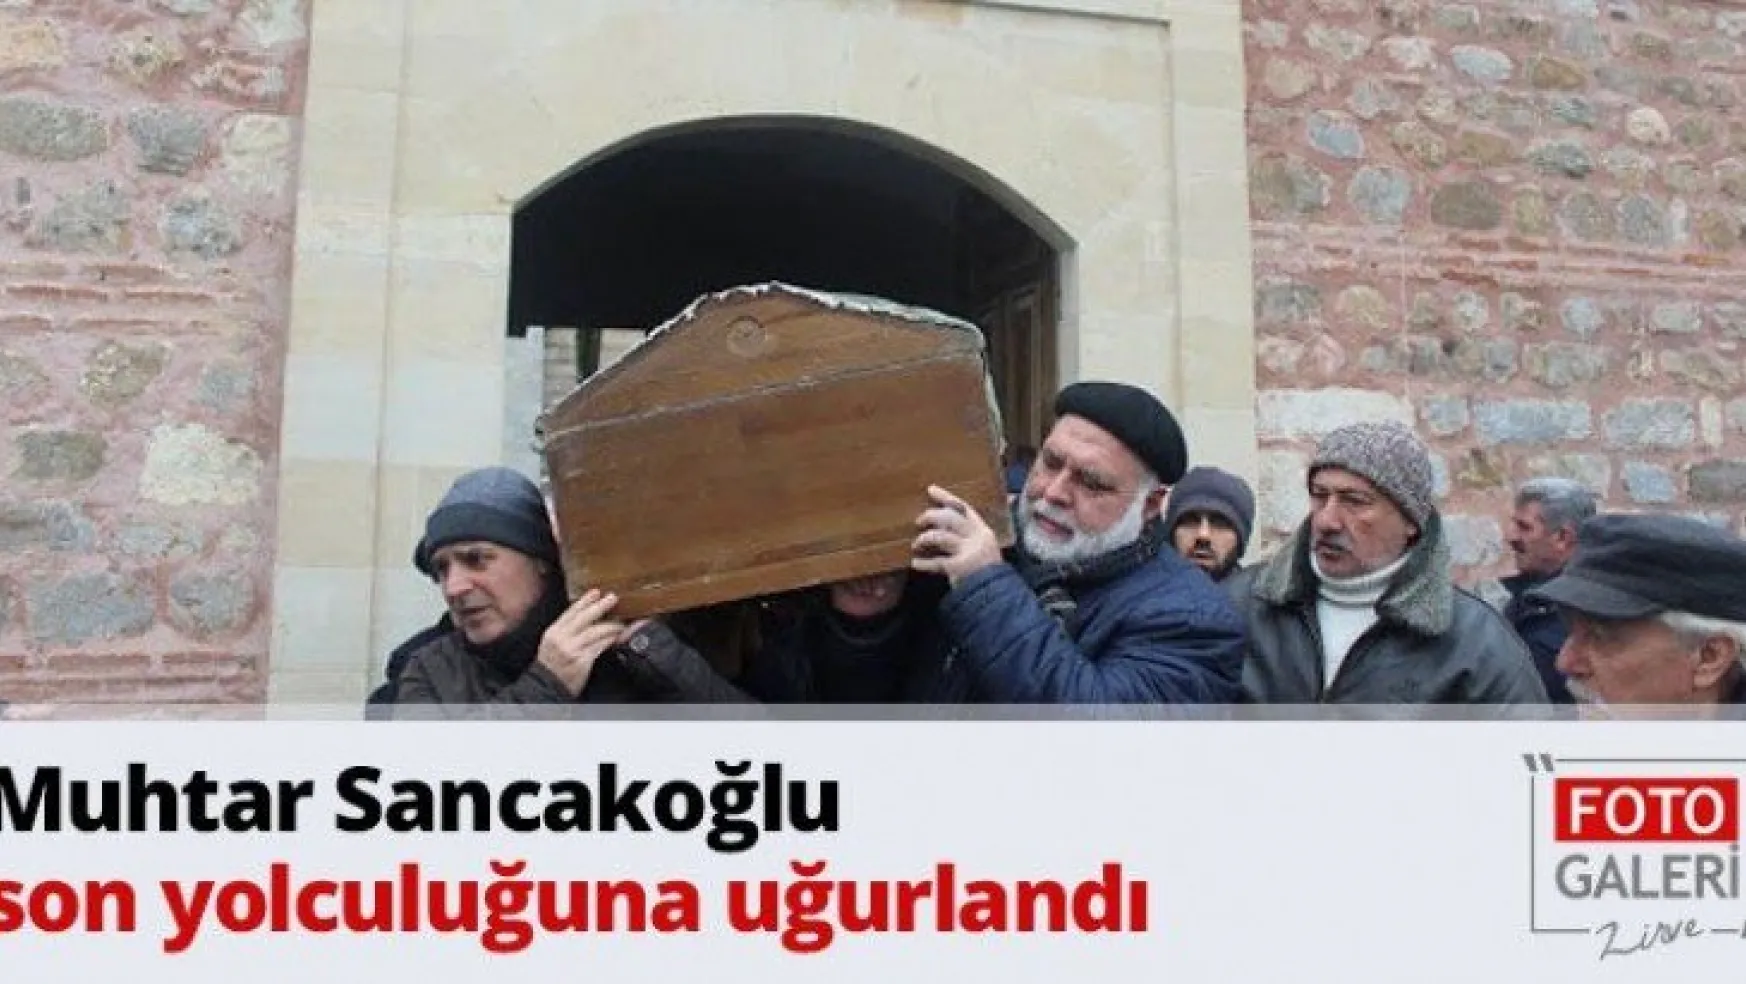 Muhtar Sancakoğlu son yolculuğuna uğurlandı